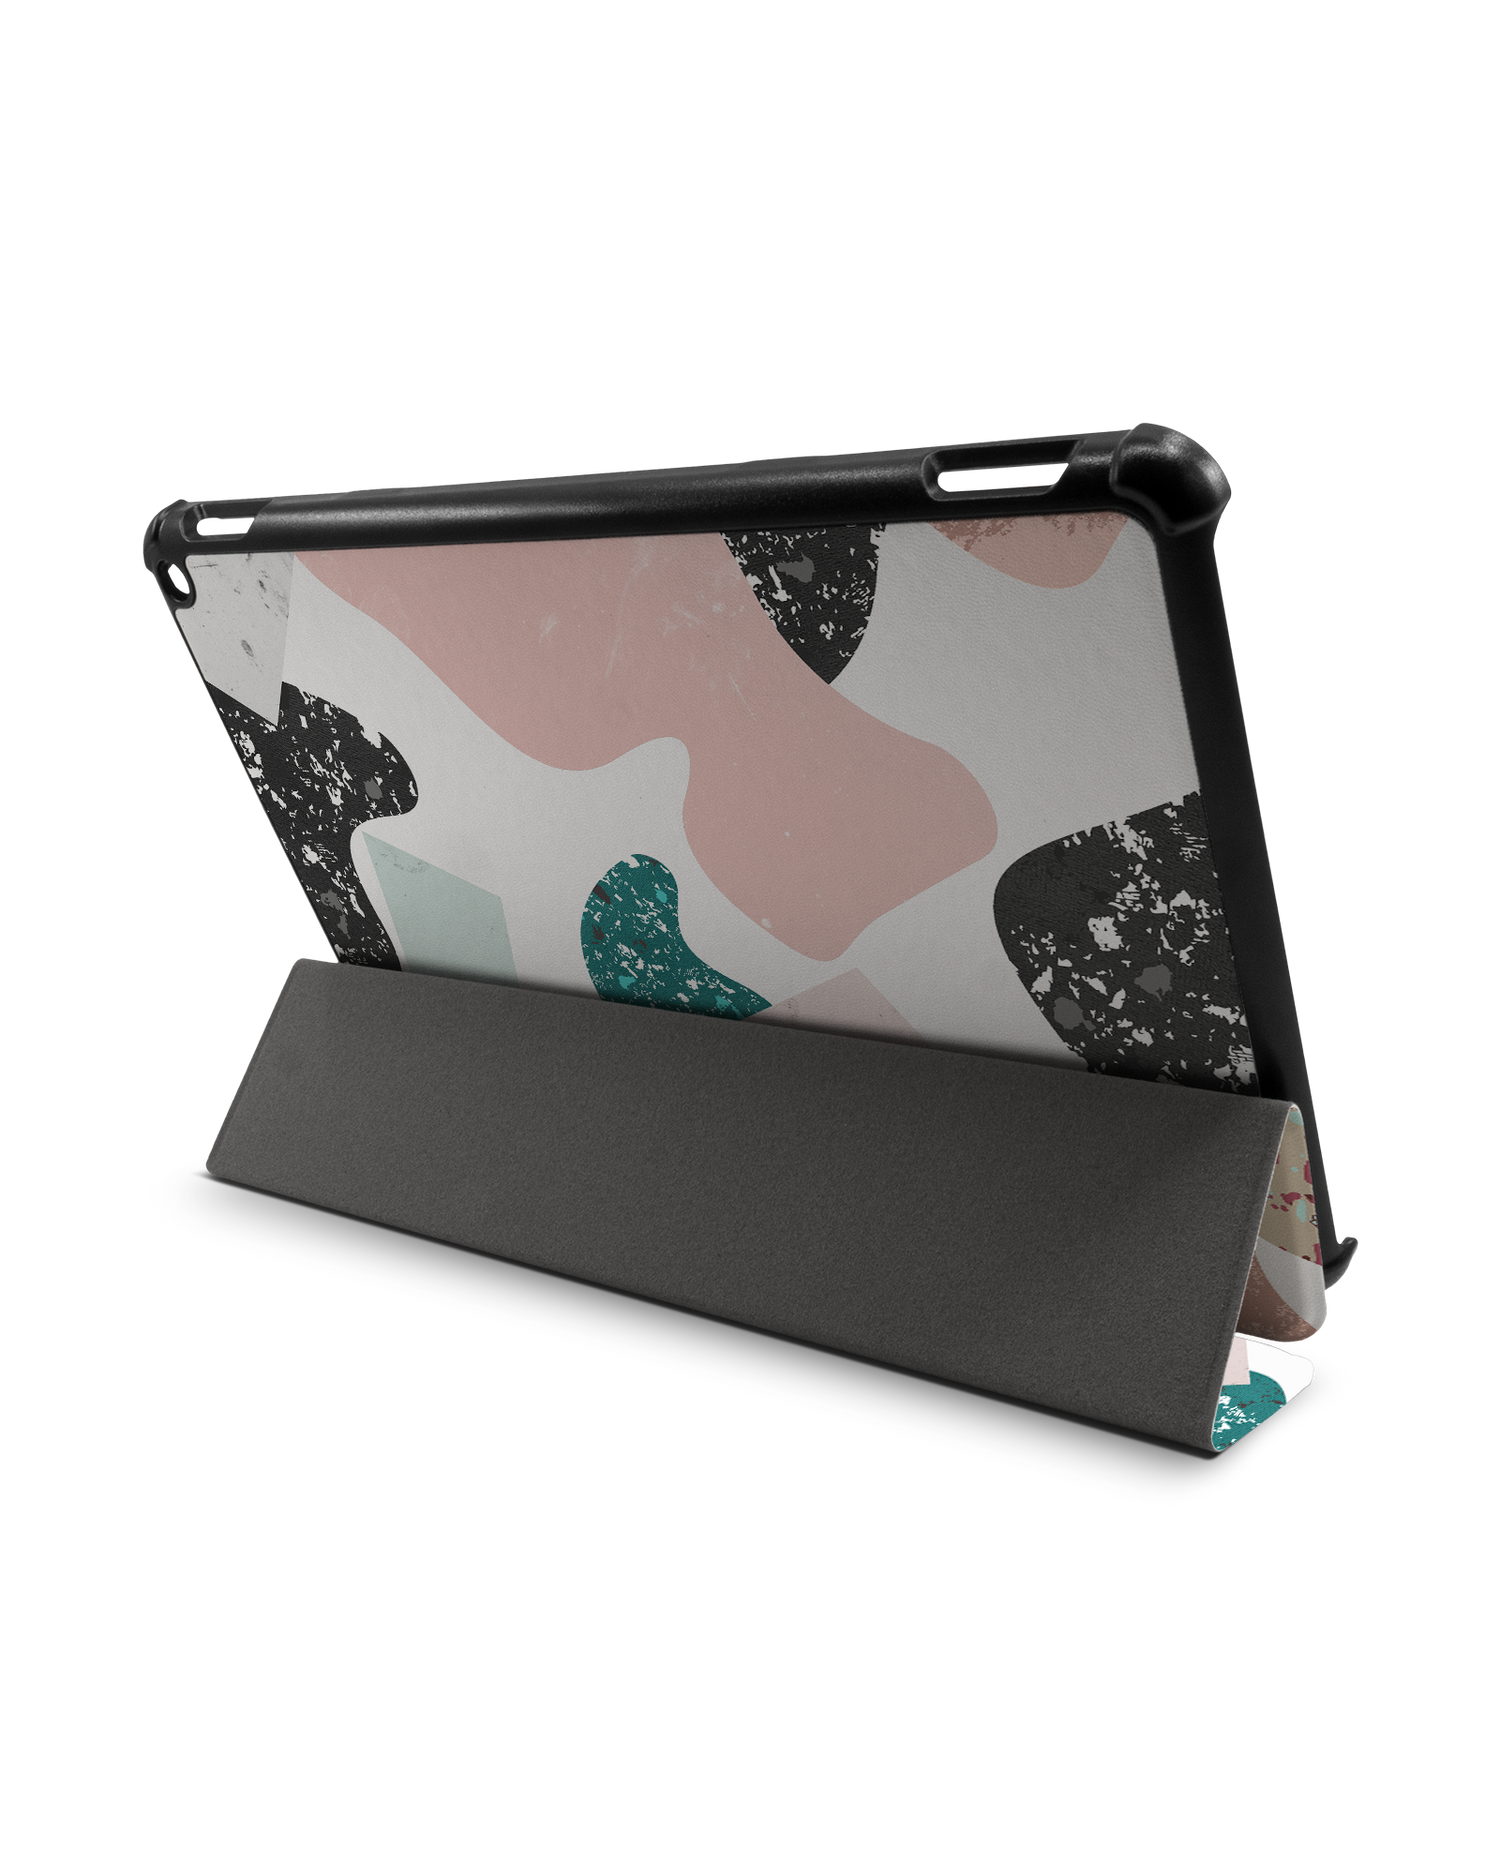 Scattered Shapes Tablet Smart Case für Amazon Fire HD 10 (2021): Aufgestellt im Querformat